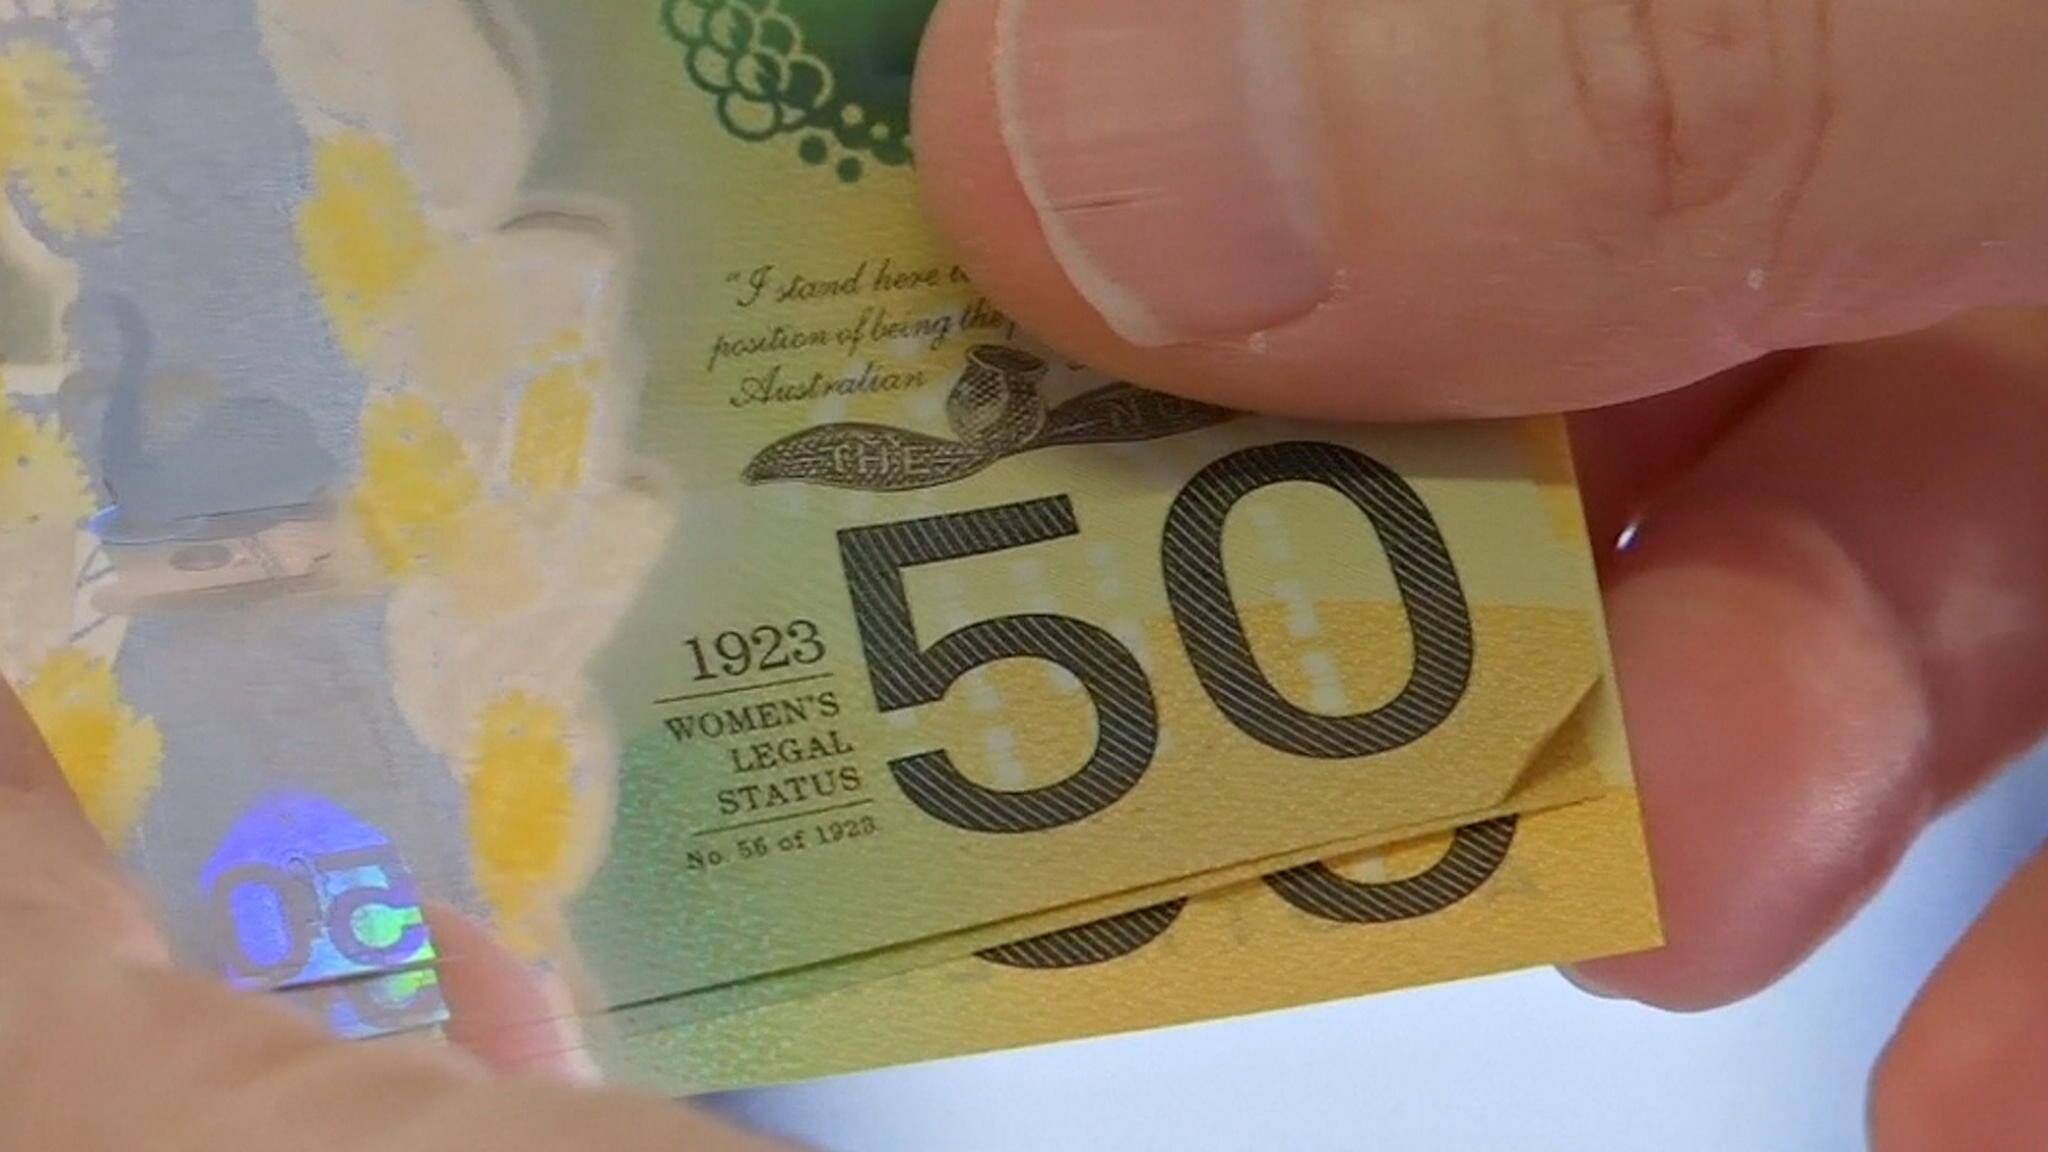 В австралии напечатали 46 млн. банкнот с орфографической ошибкой